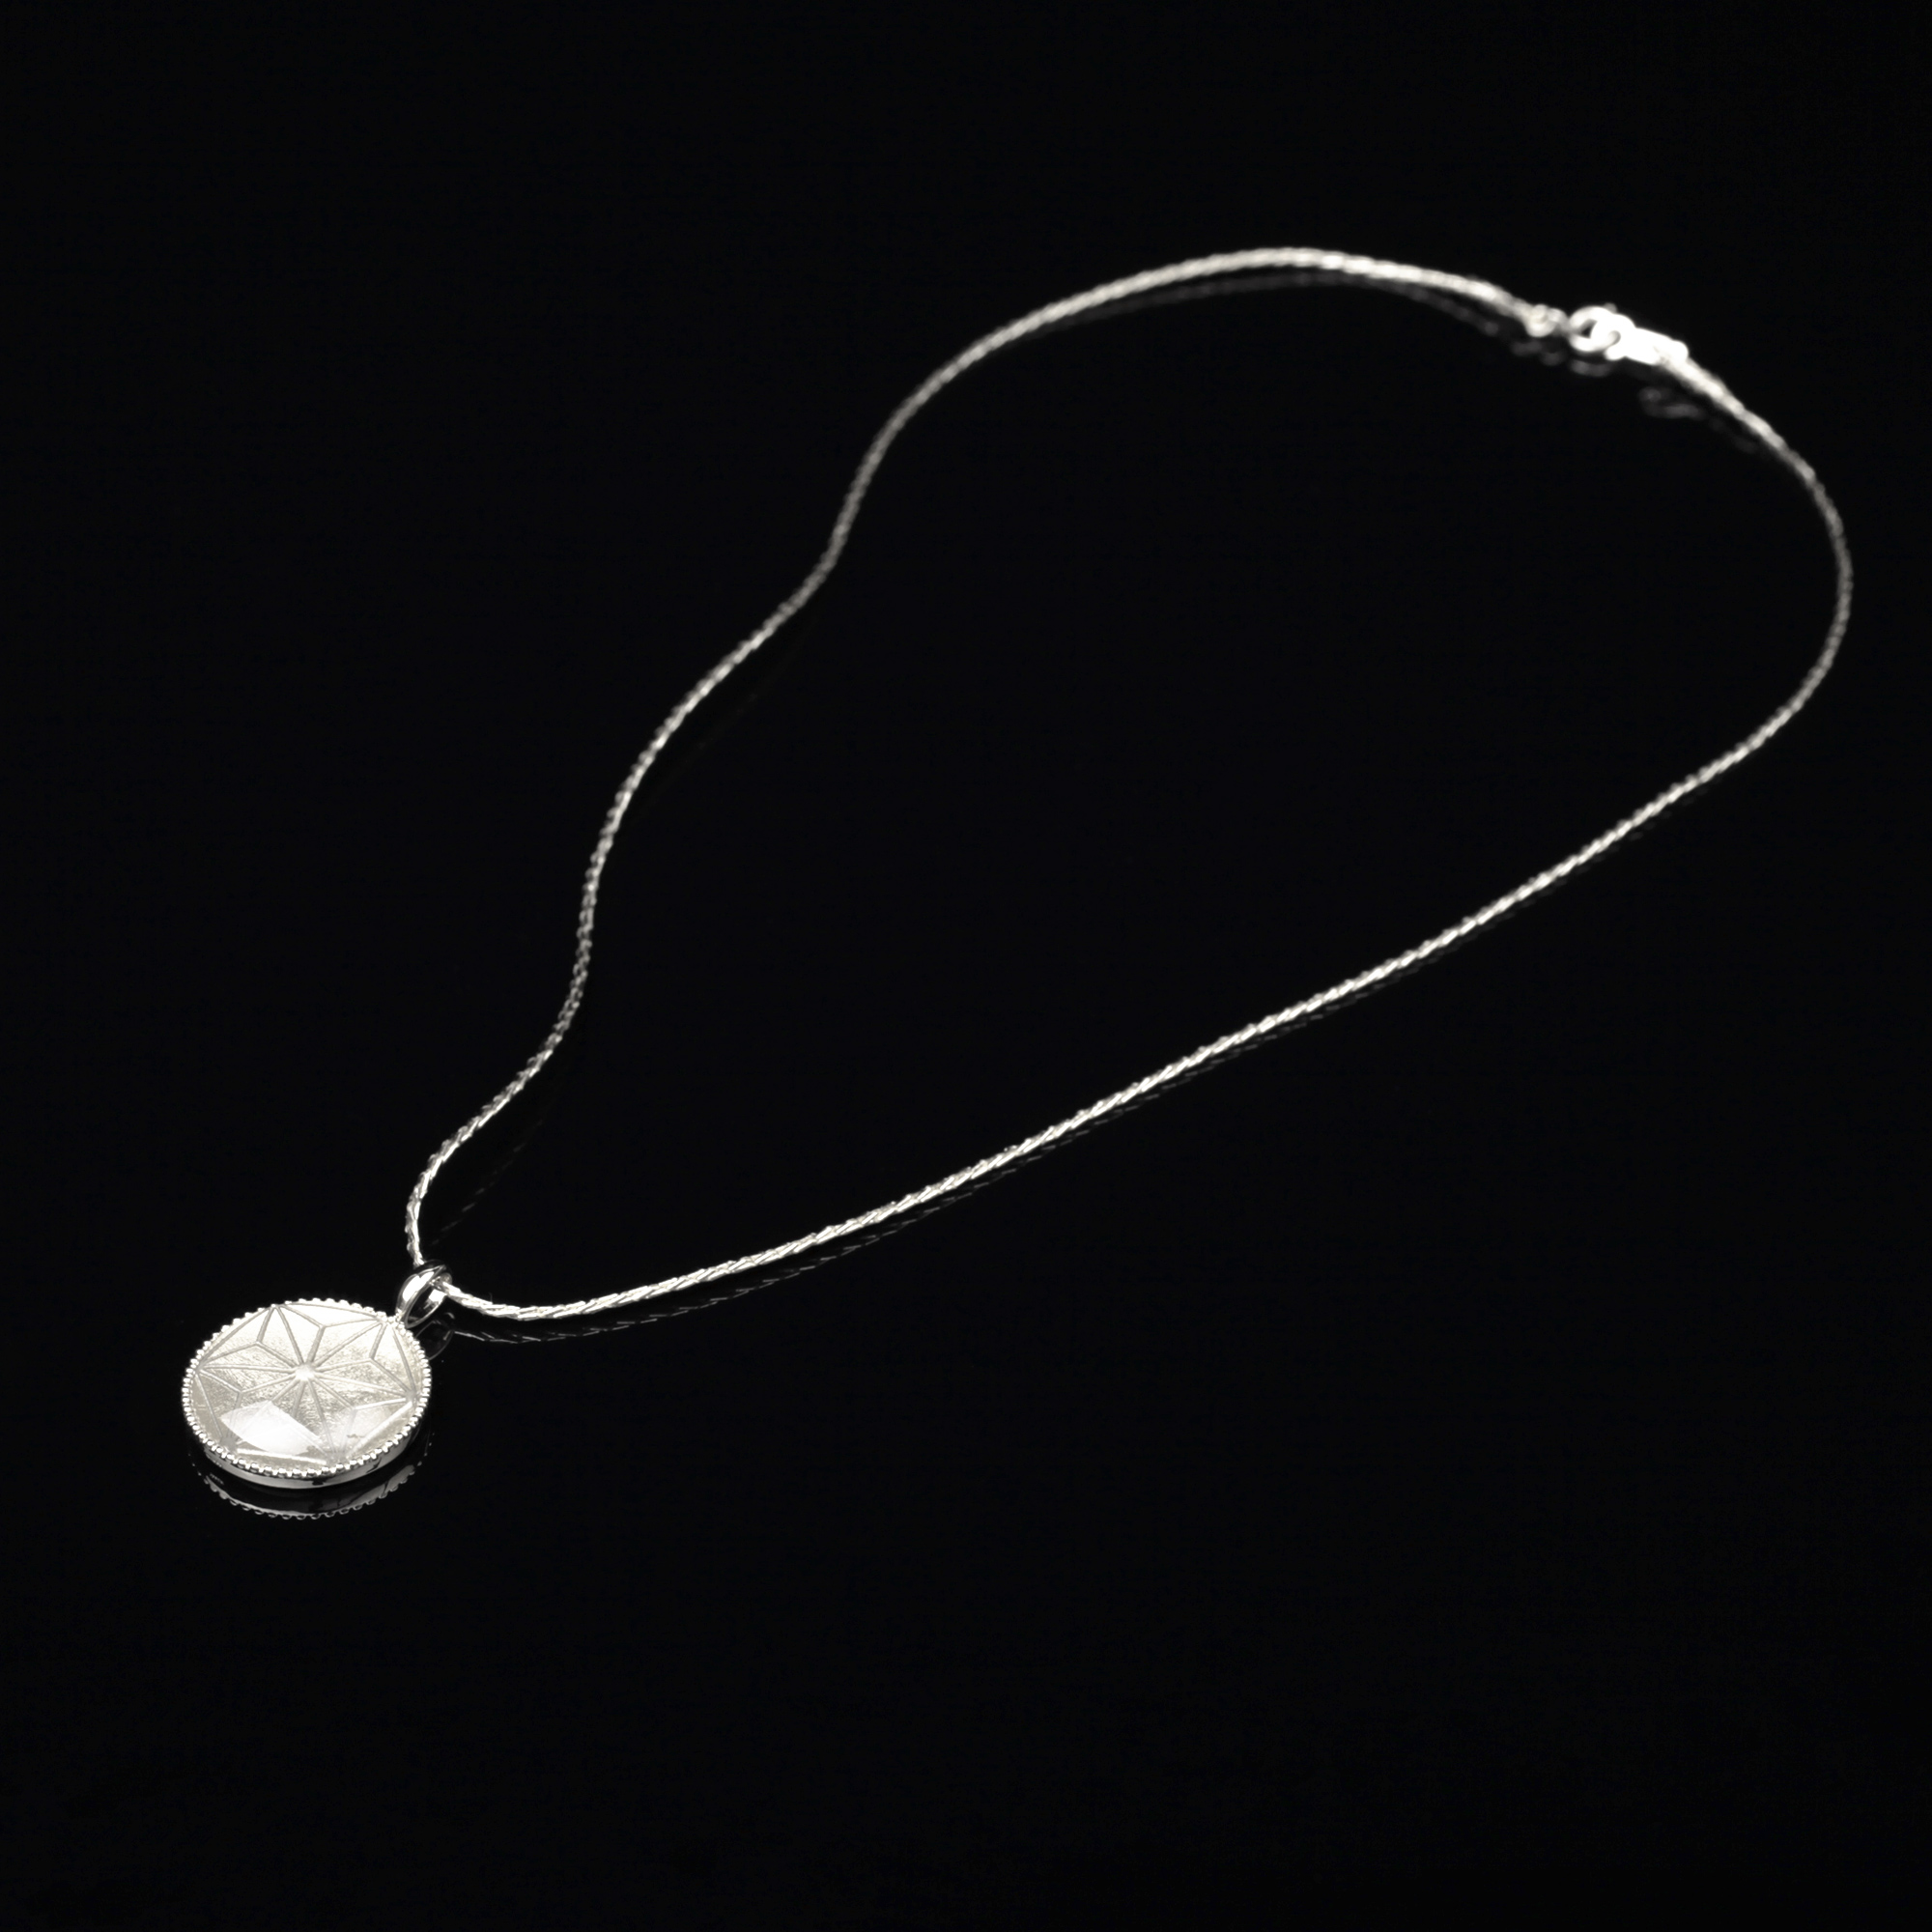 宝石クォーツ・水晶を使った和の彩　金銀糸ネックレス/ペンダントの商品写真です。型番：659-156 画像その1